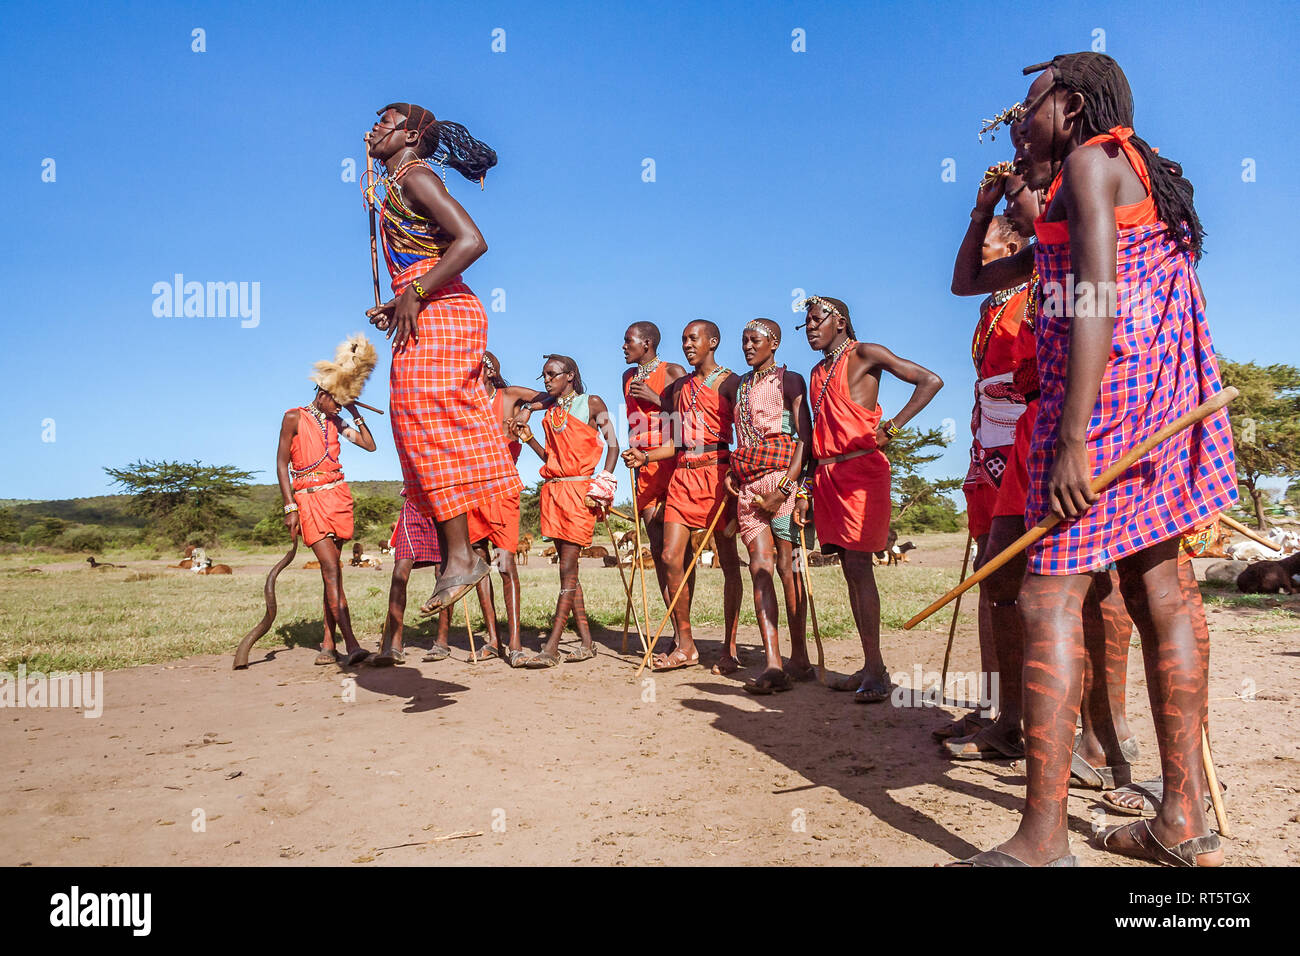 Die Masai Mara, Kenia, 23. Mai 2017: Masai Krieger in der traditionellen Tracht während eines Rituals springen. Stockfoto